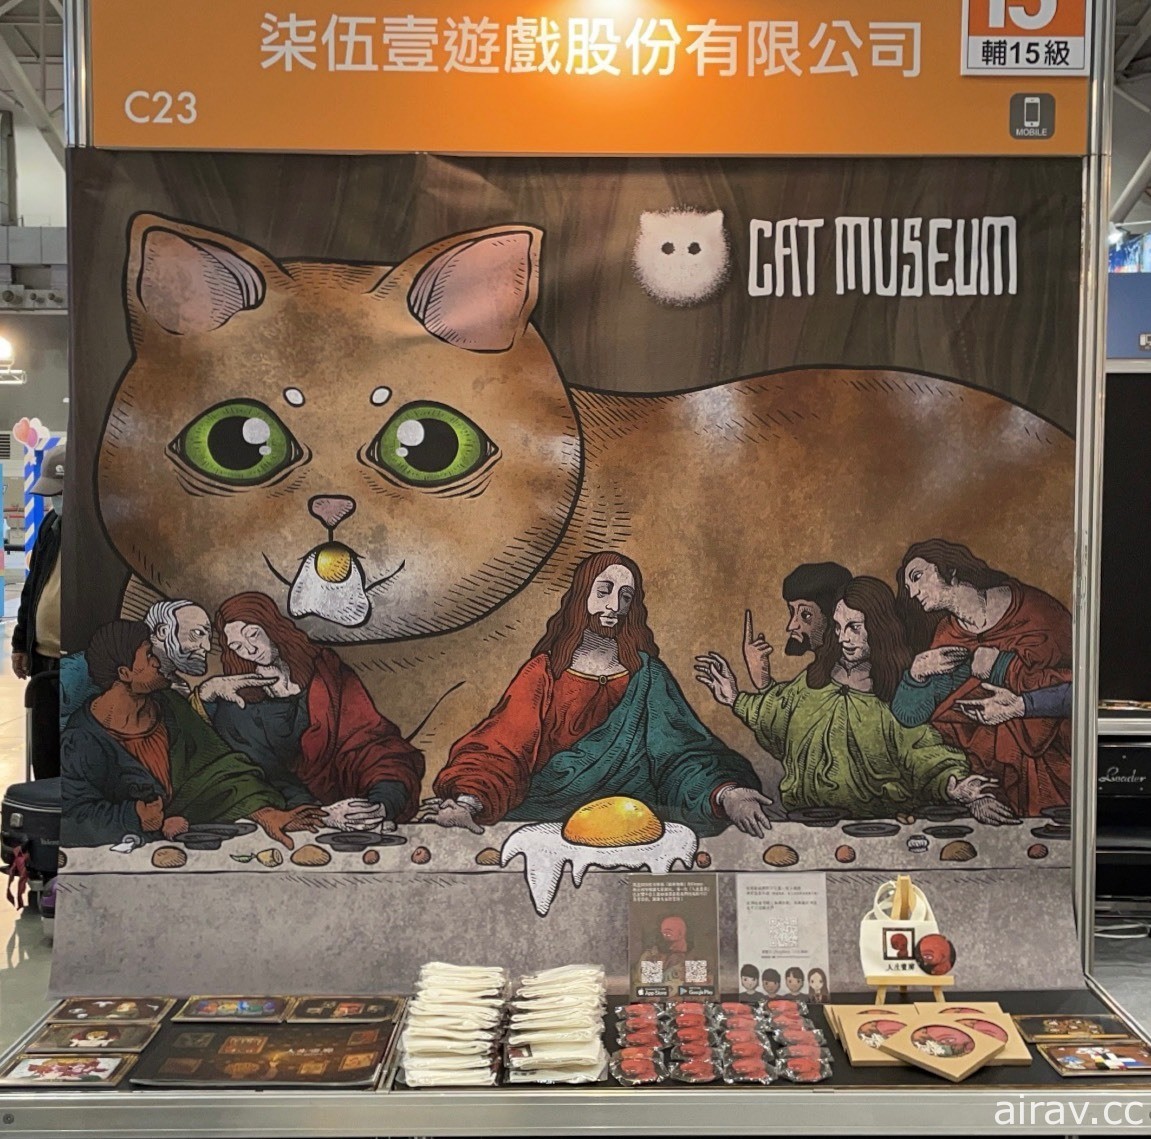 【TpGS 21】沿袭《人生画廊》风格新作《猫博物馆》 团队：故事会光明一点